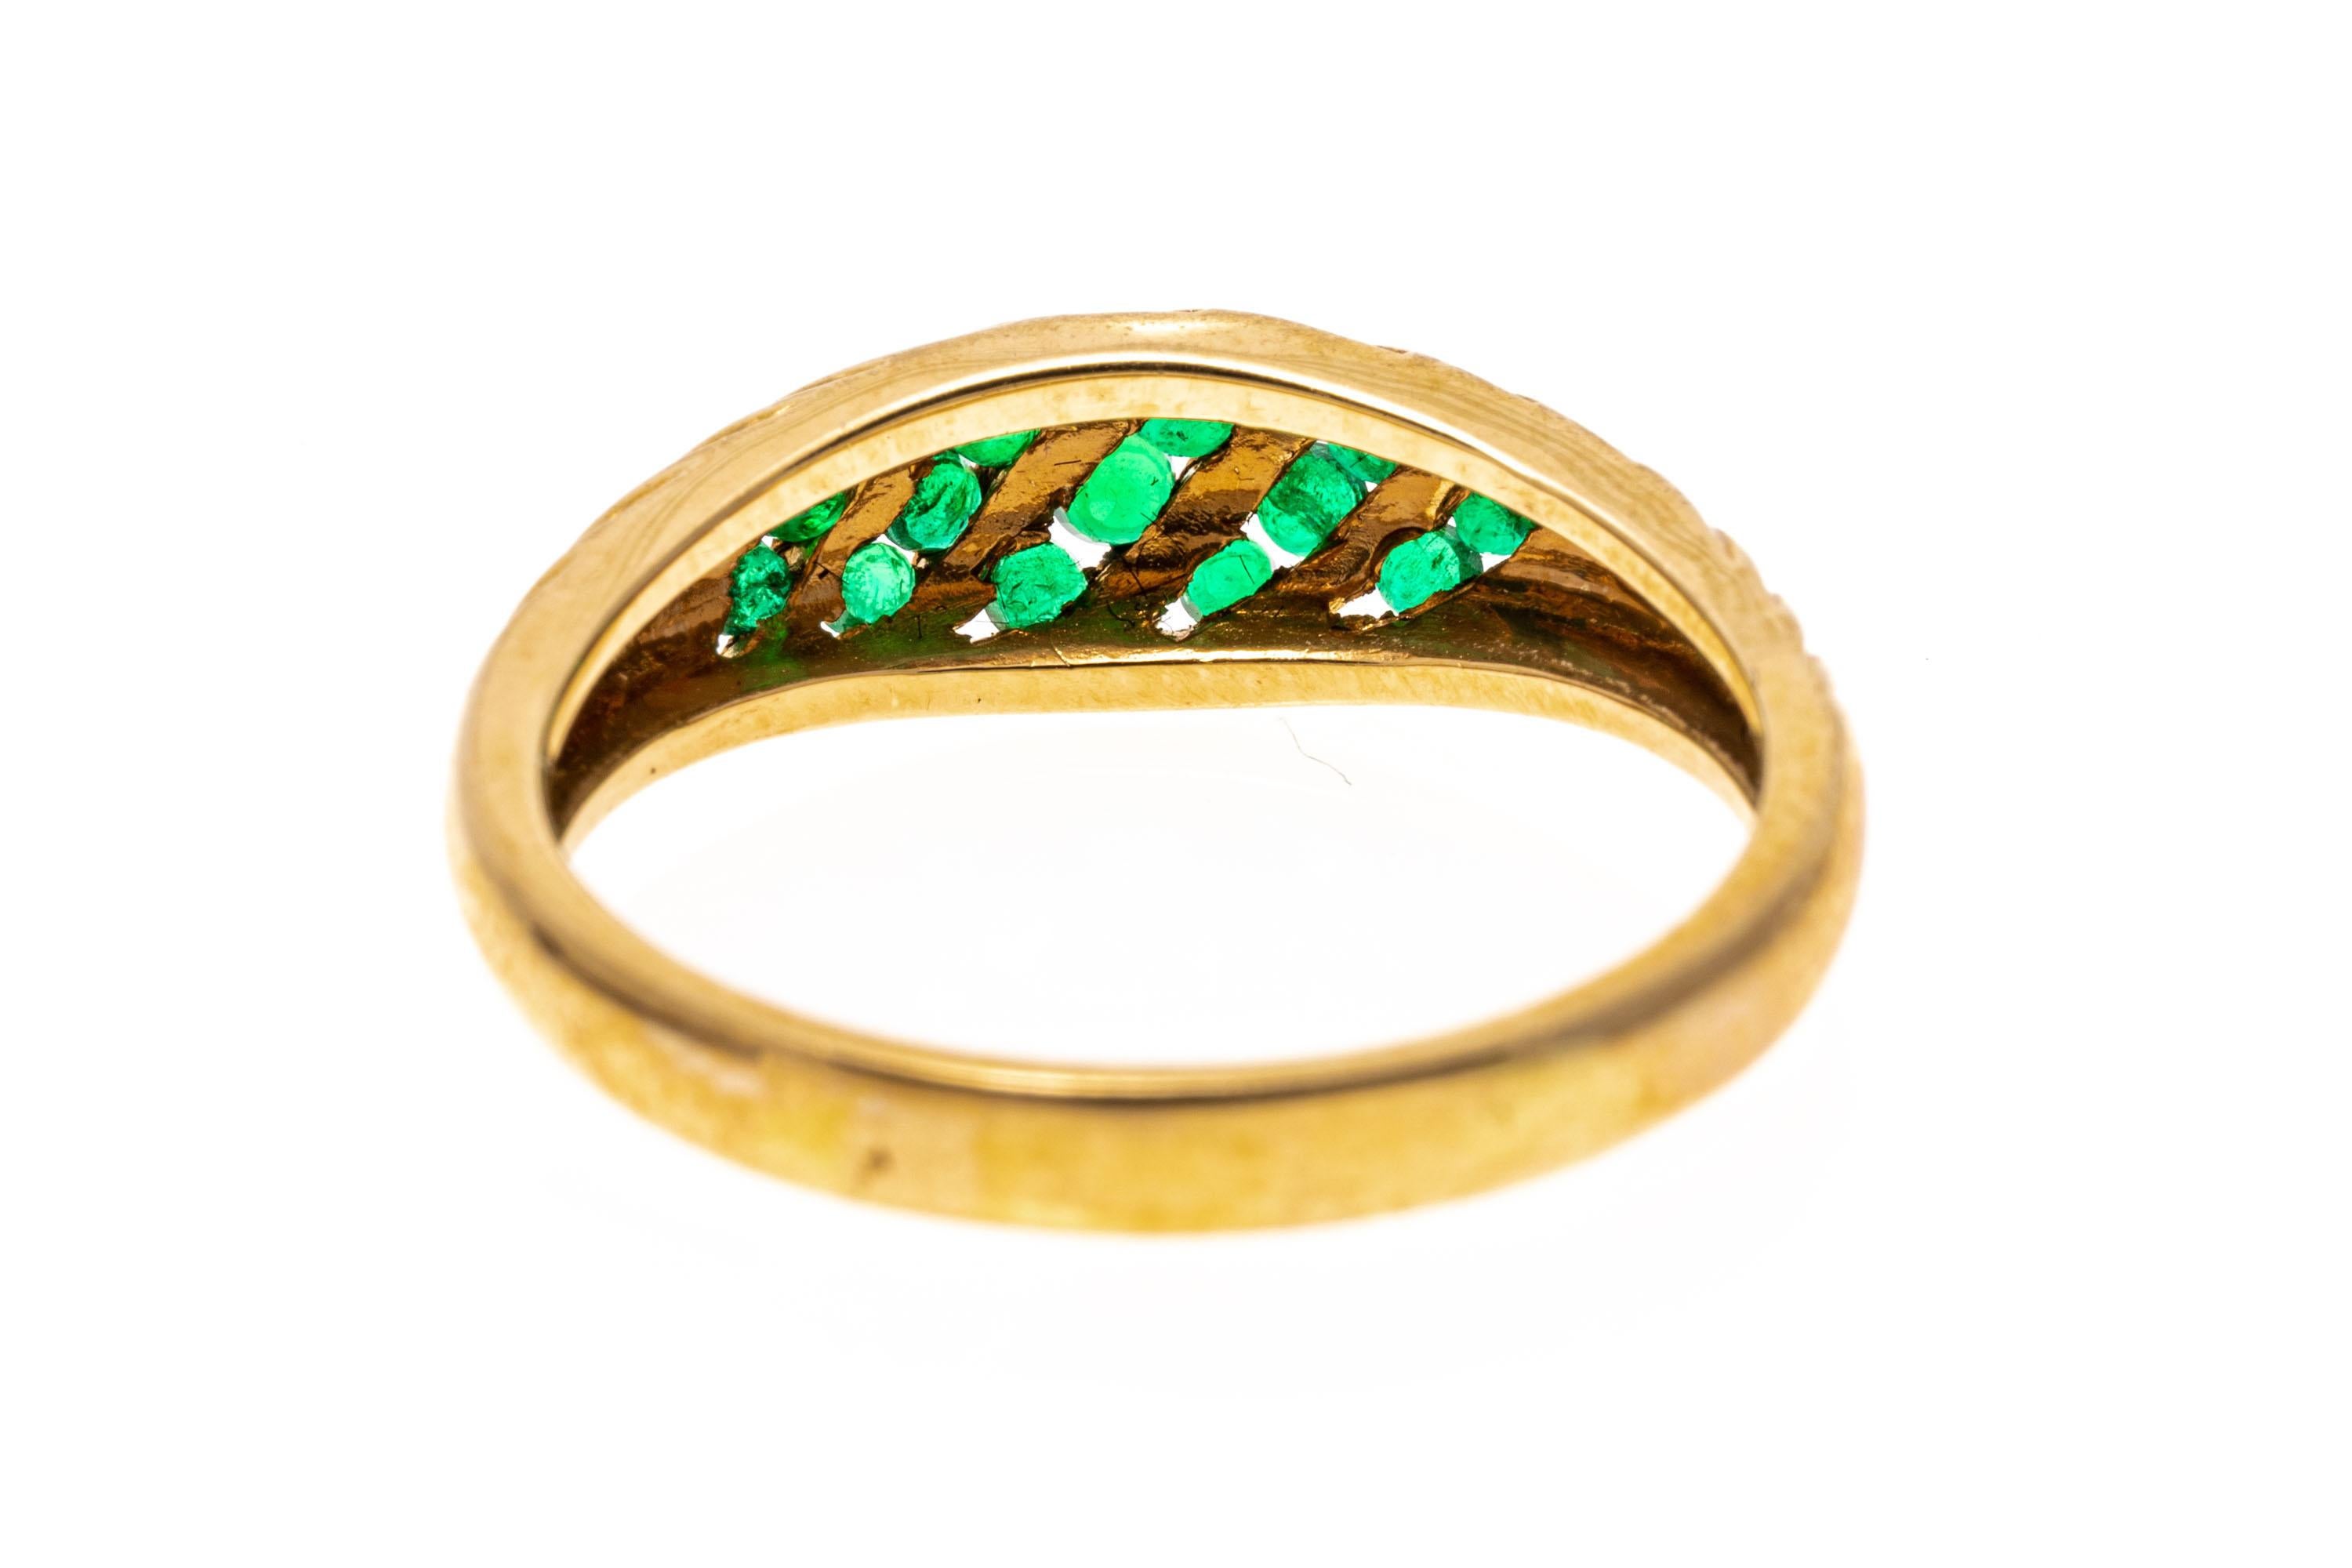 ring aus 14k Gelbgold. Dieser hübsche Ring ist eine gerippte, gewölbte Stil, mit einem abgewinkelten, Kanal-Set-Center-Cluster von runden facettierten, mittelgrünen Farbe Smaragde, etwa 0,40 TCW.
Markierungen: 14k
Abmessungen: 1/2